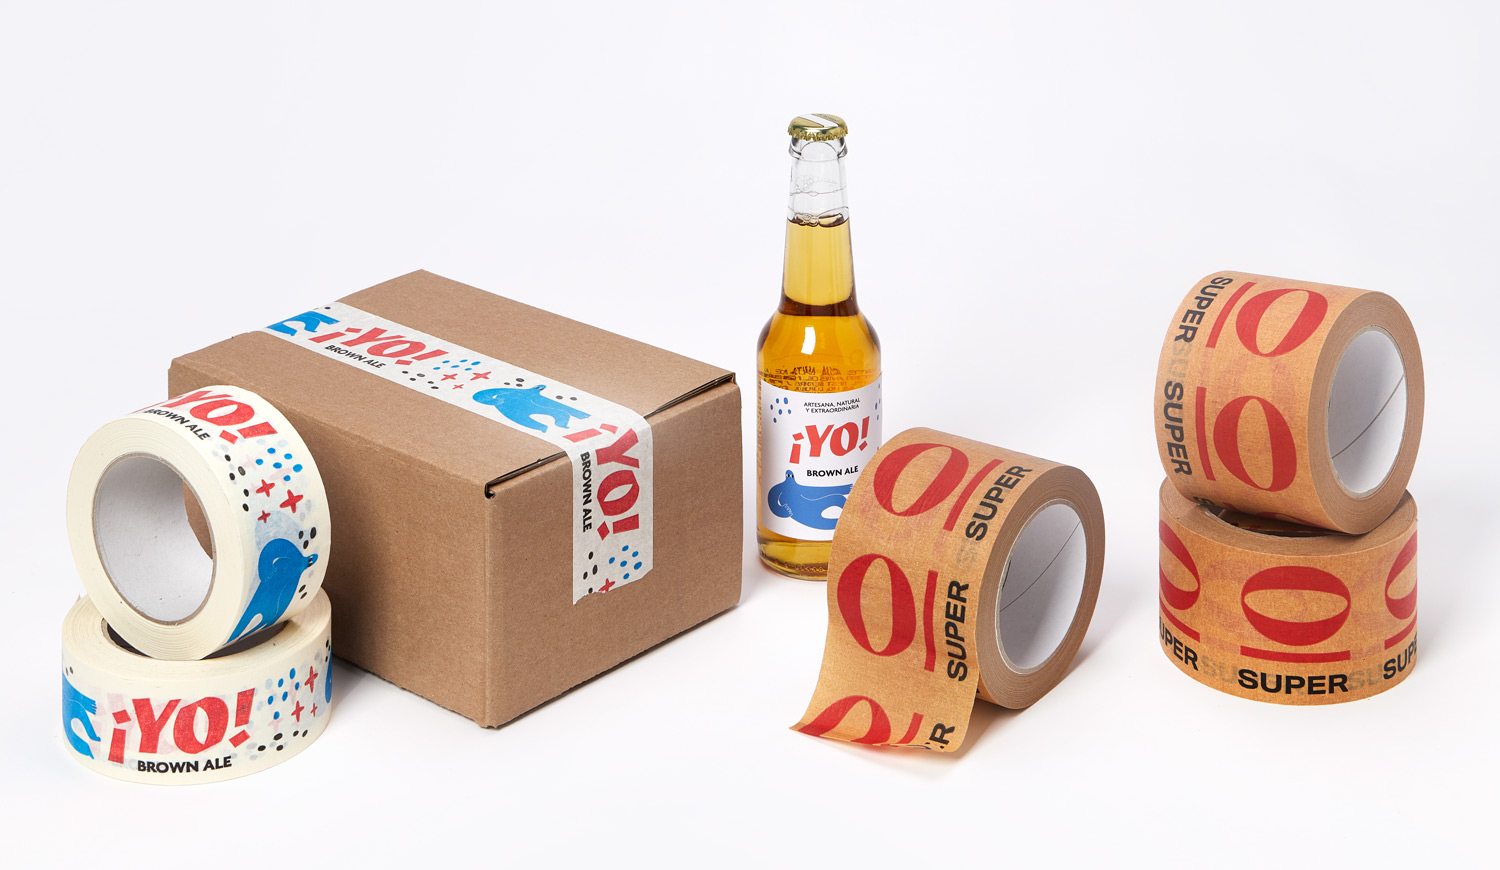 Nastro adesivo personalizzato - Valsecchi Packaging